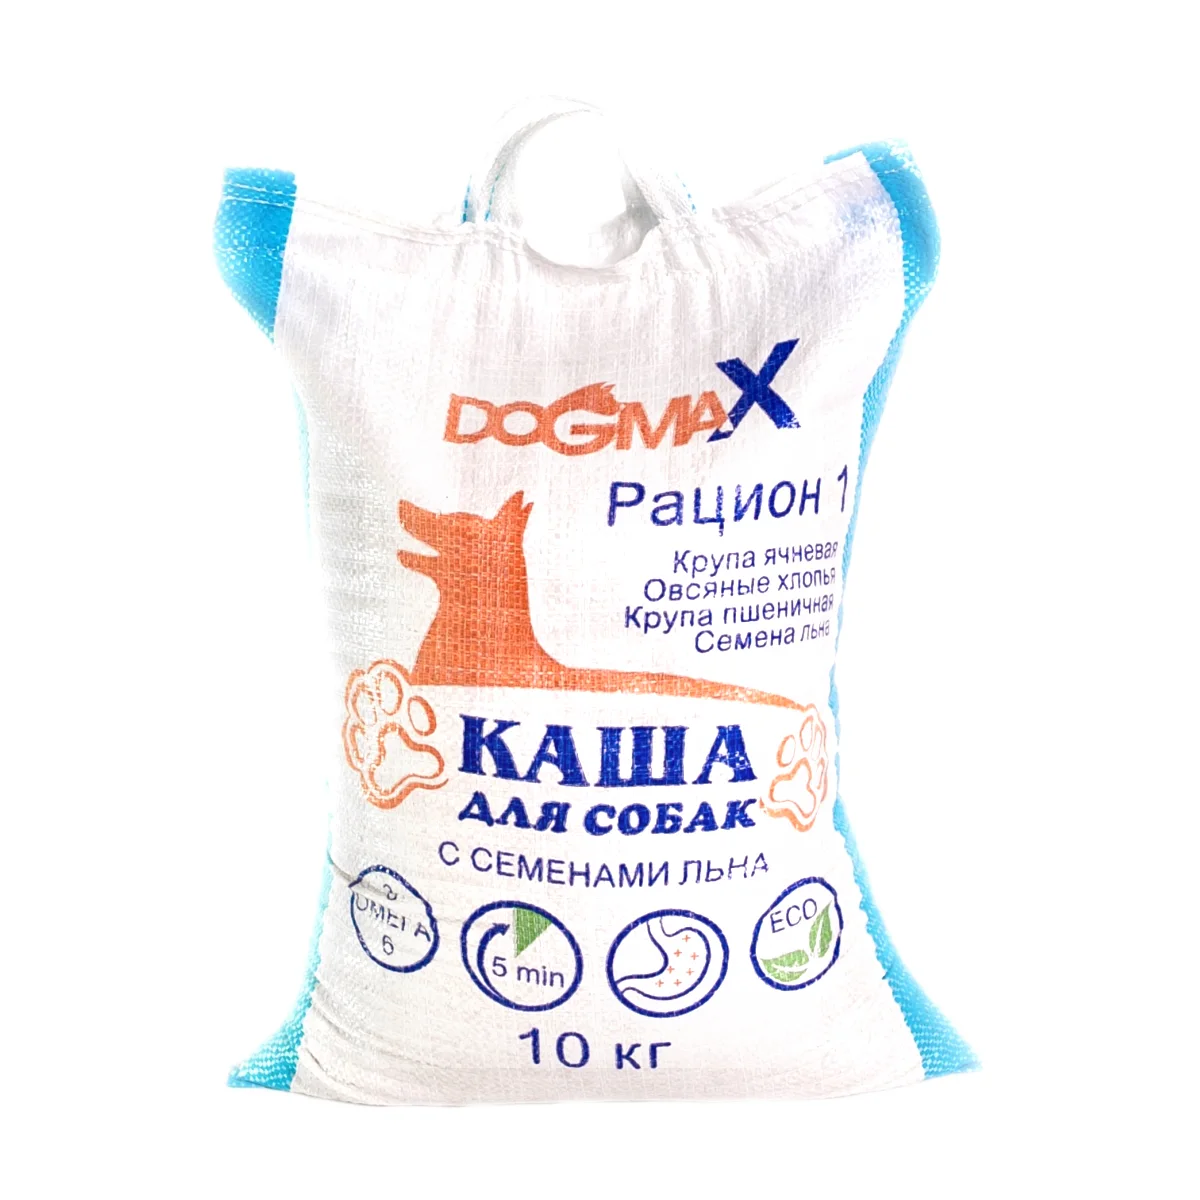 Корм для собак DOGMAX Рацион 1 (10 кг)